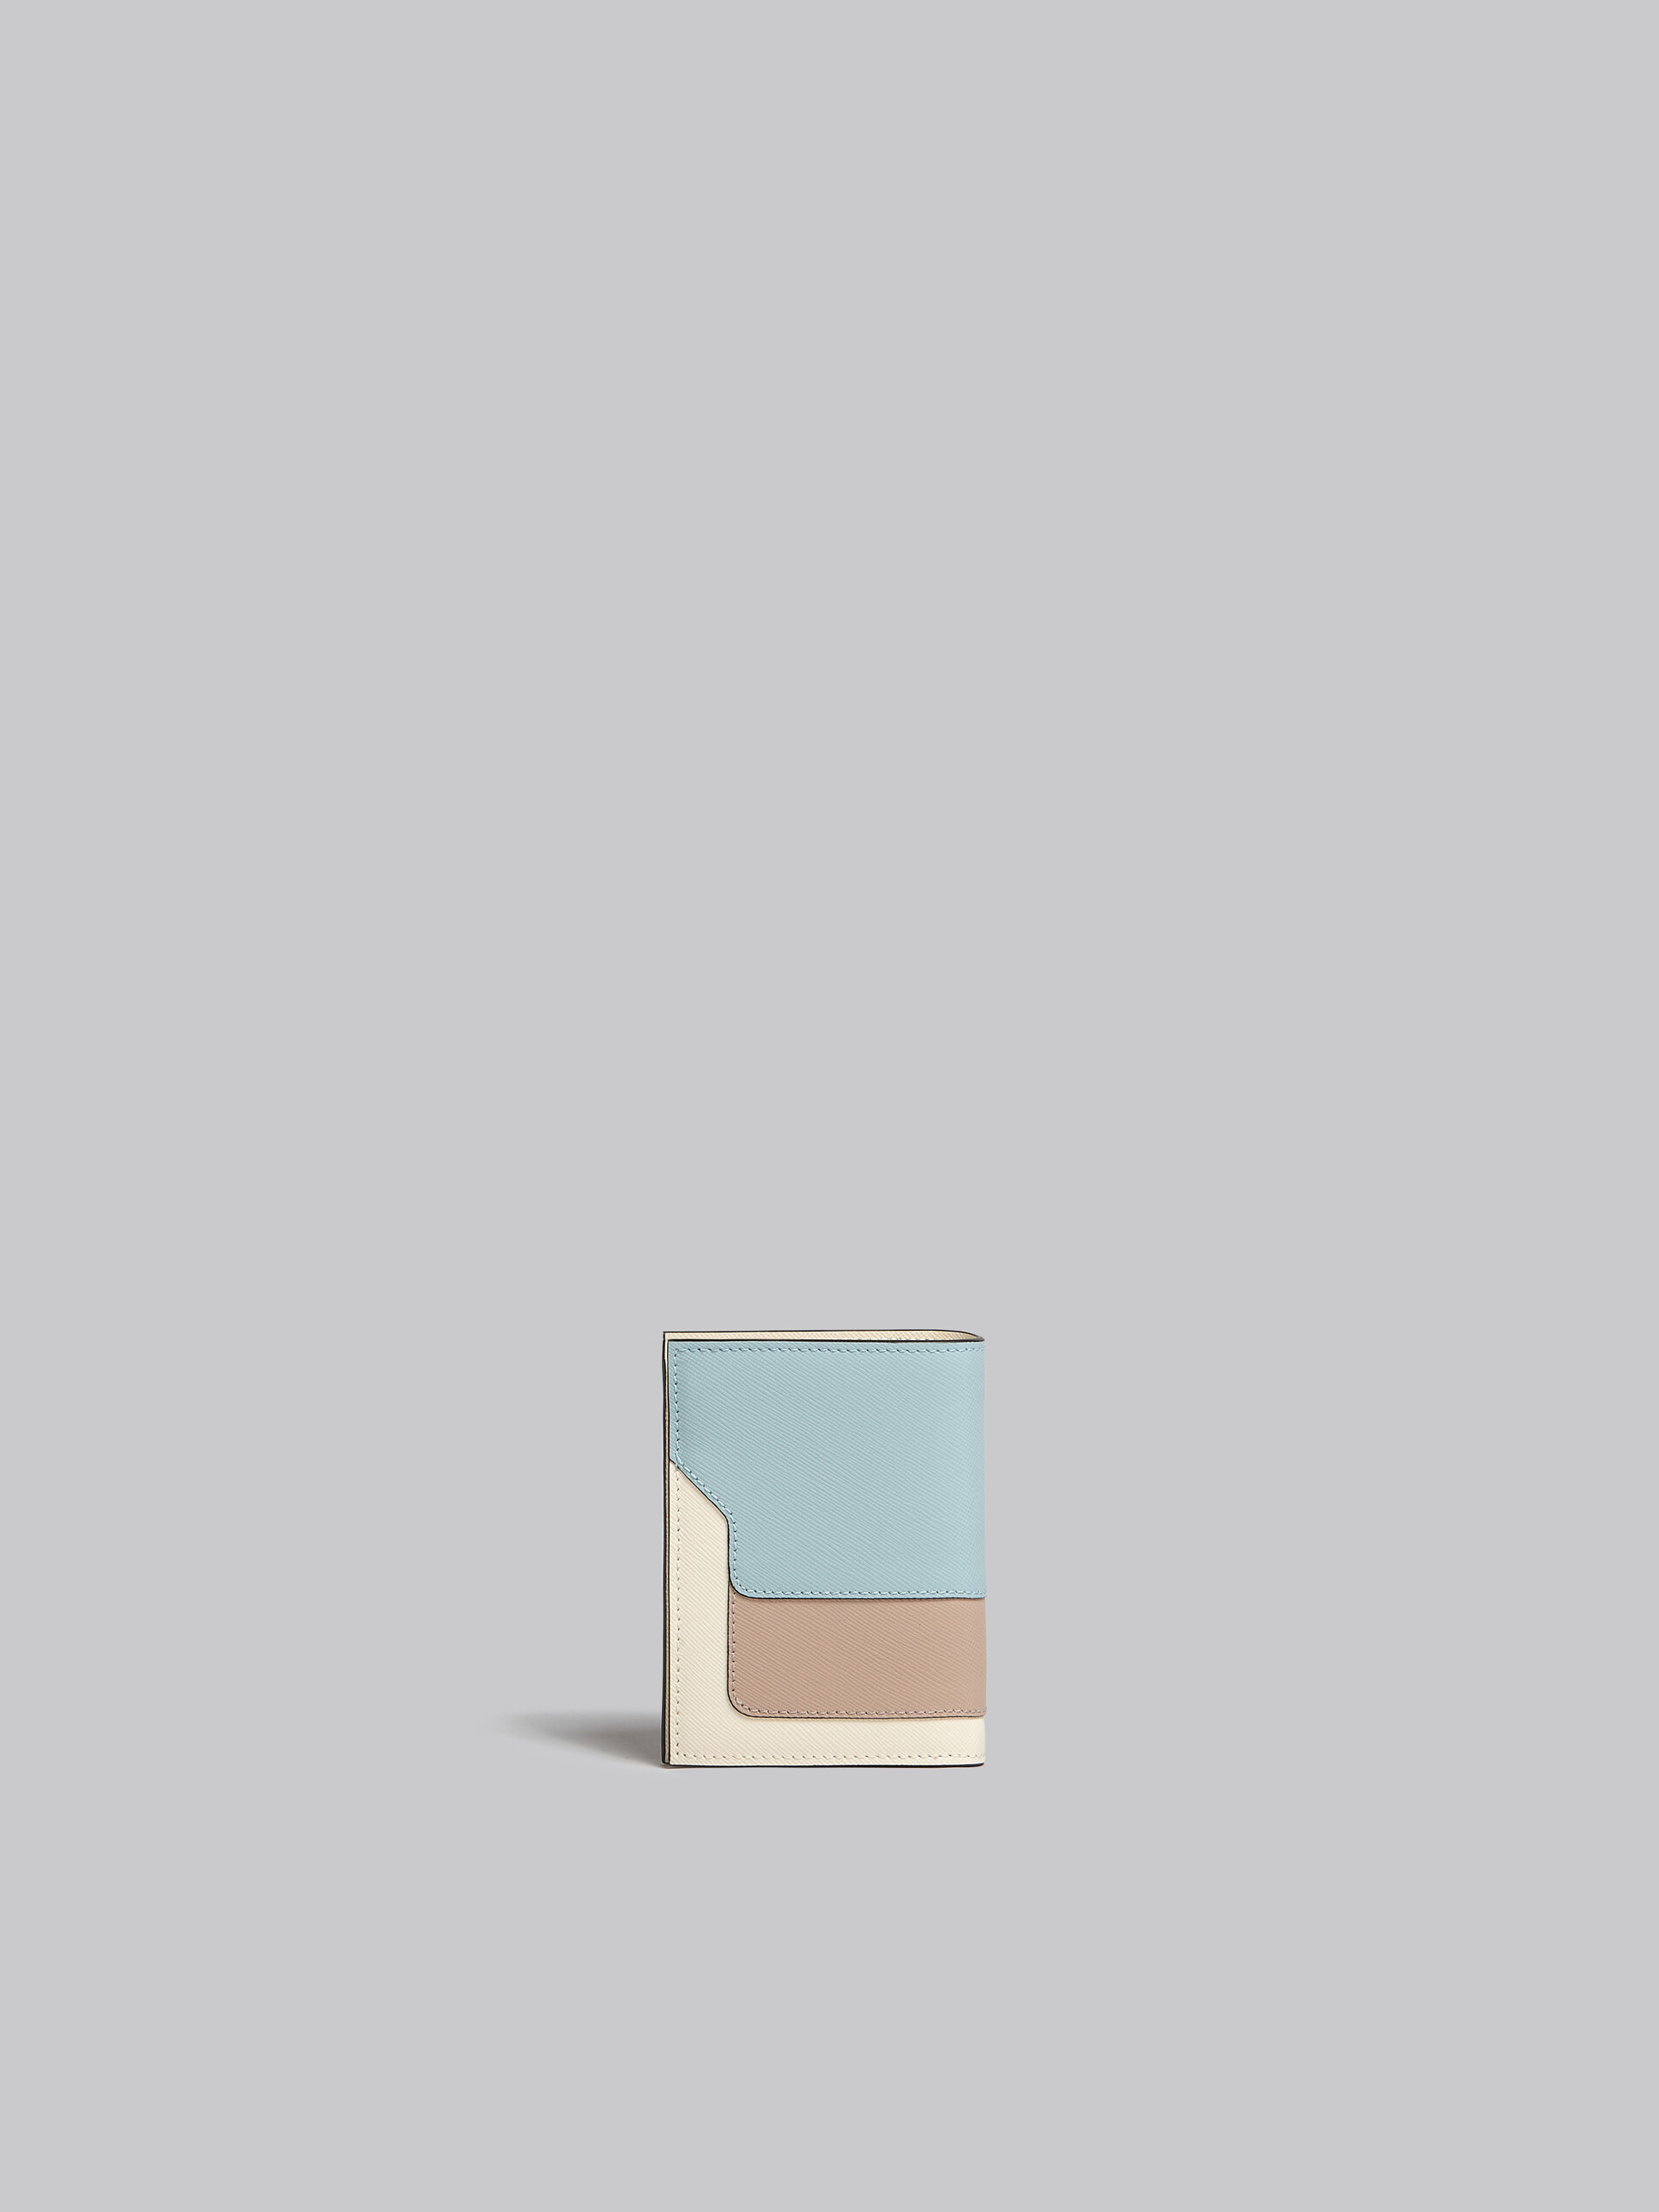 ティーグリーン、ライムストーン、ライトキャメル　サフィアーノレザー製二つ折りウォレット - 財布 - Image 3